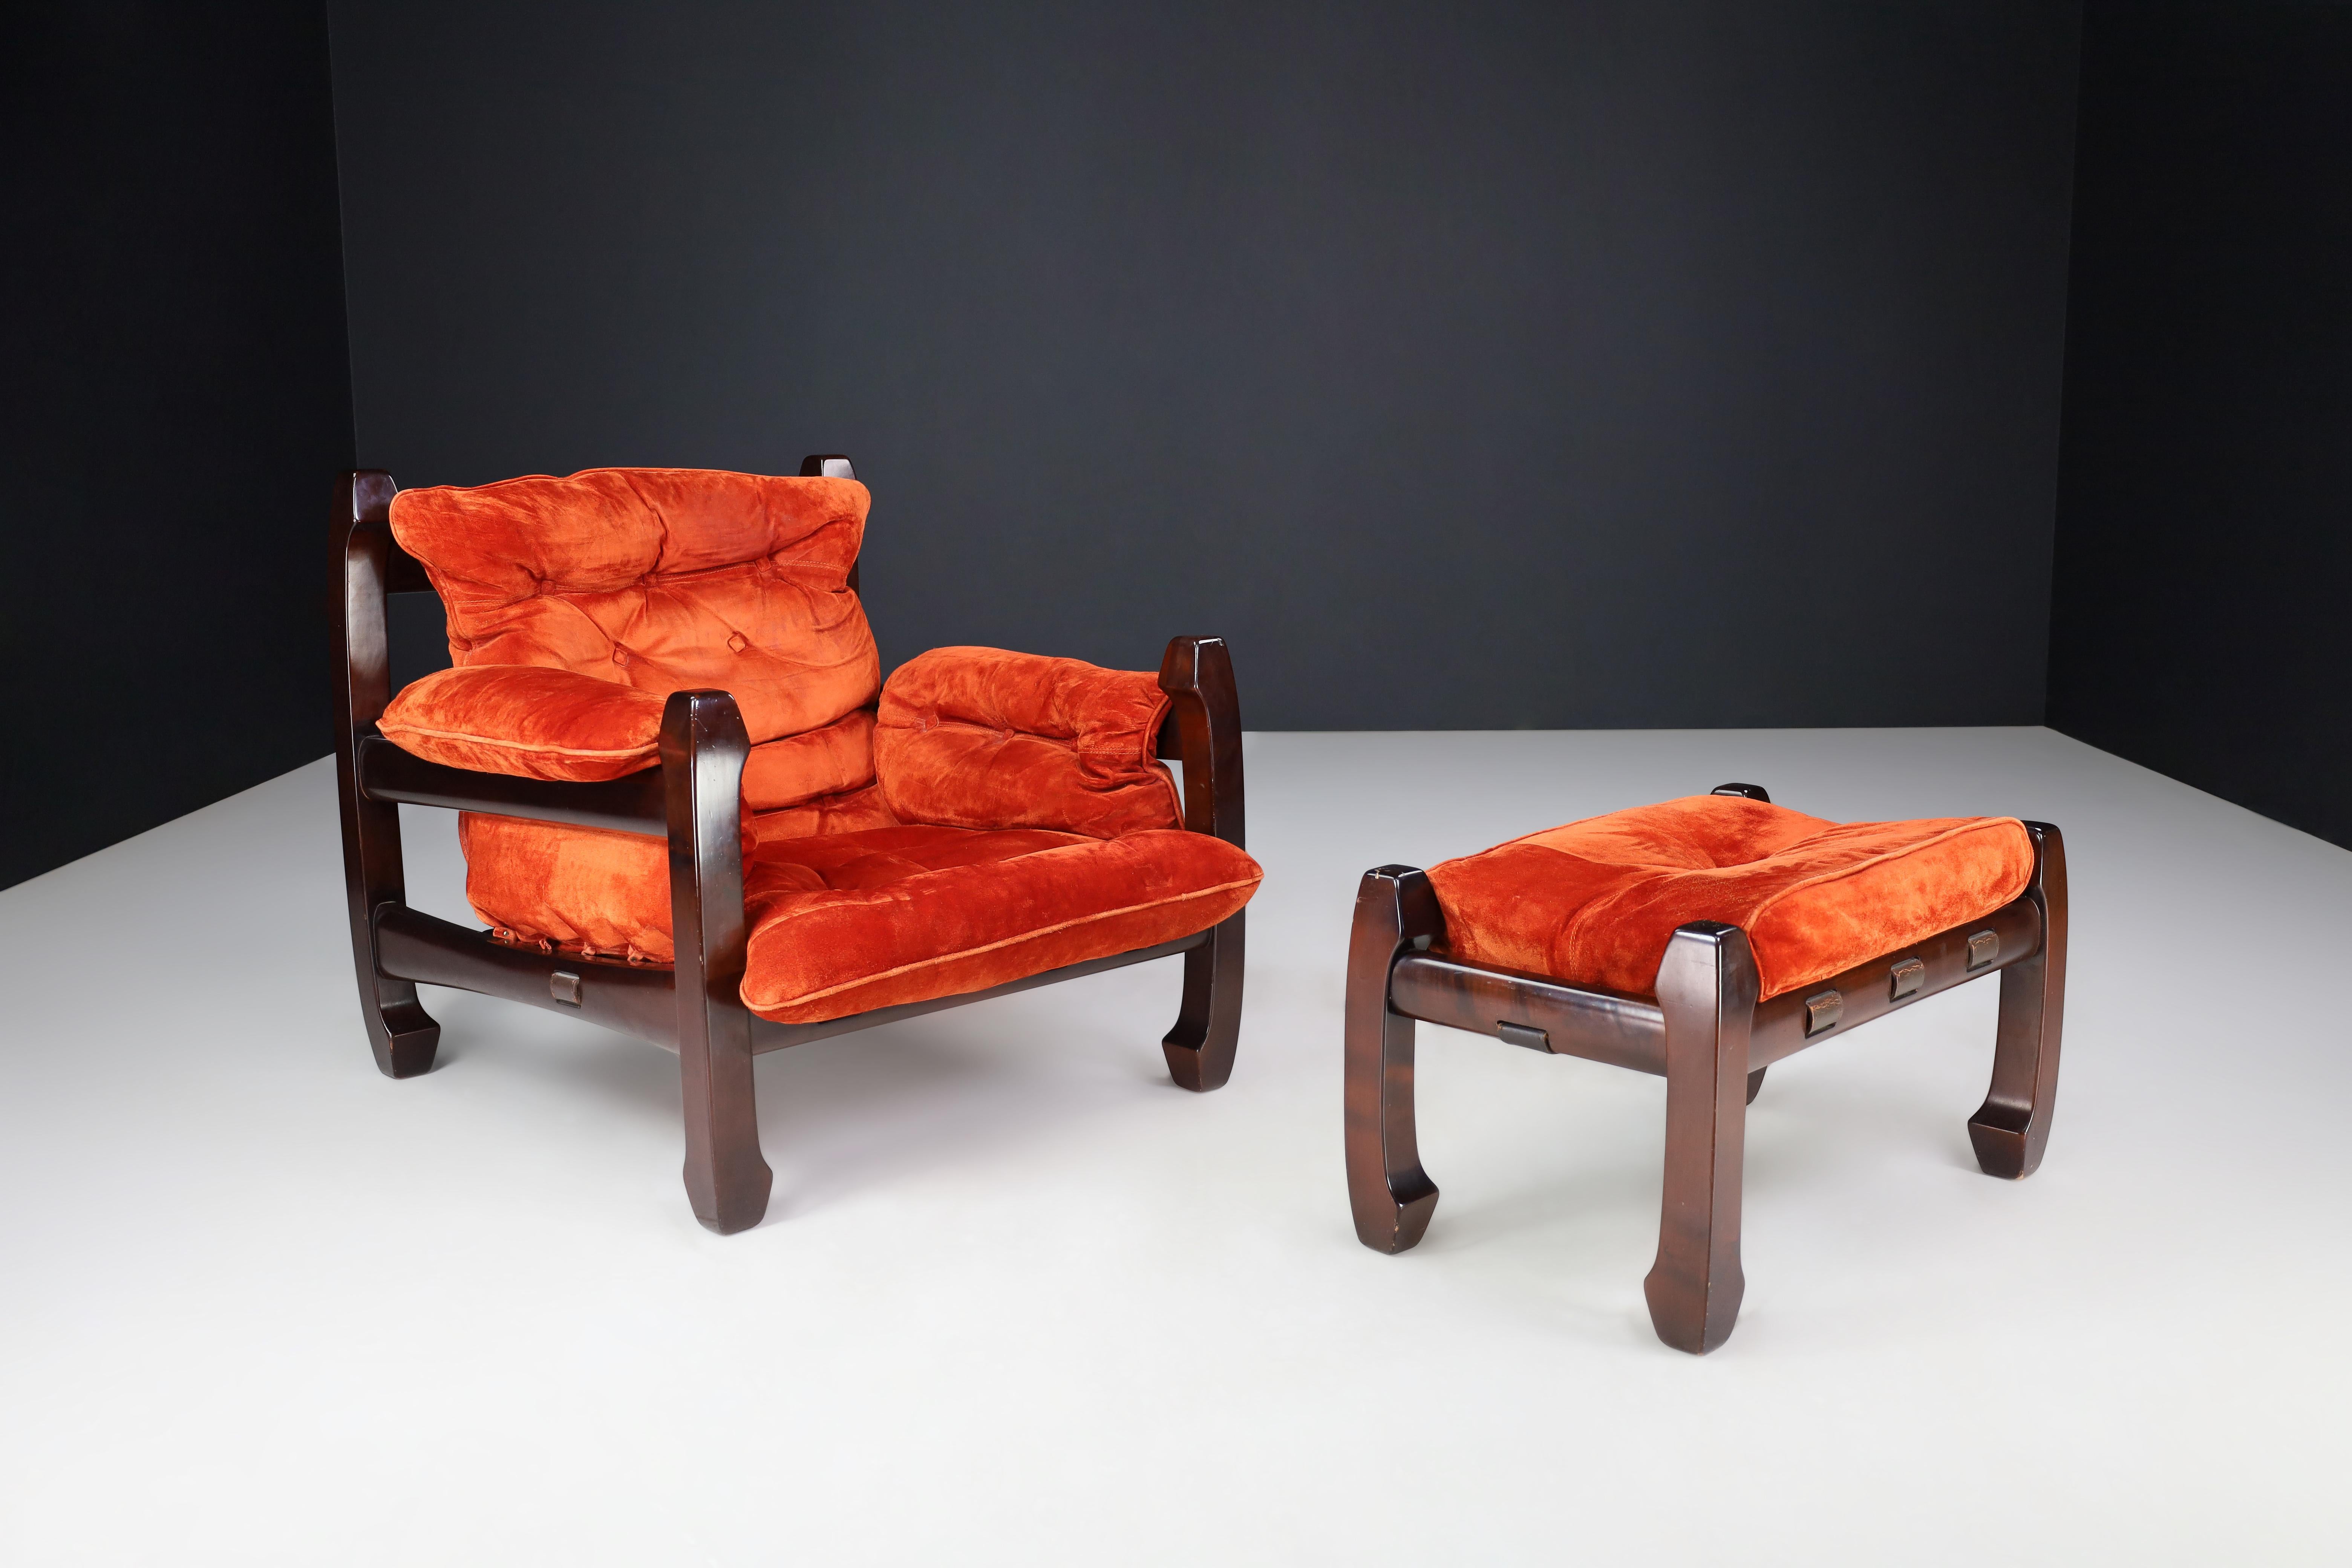 Luciano Frigeri Loungesessel und Ottomann „SAMURAI“, Italien, 1960er Jahre

Wir stellen den Sessel 